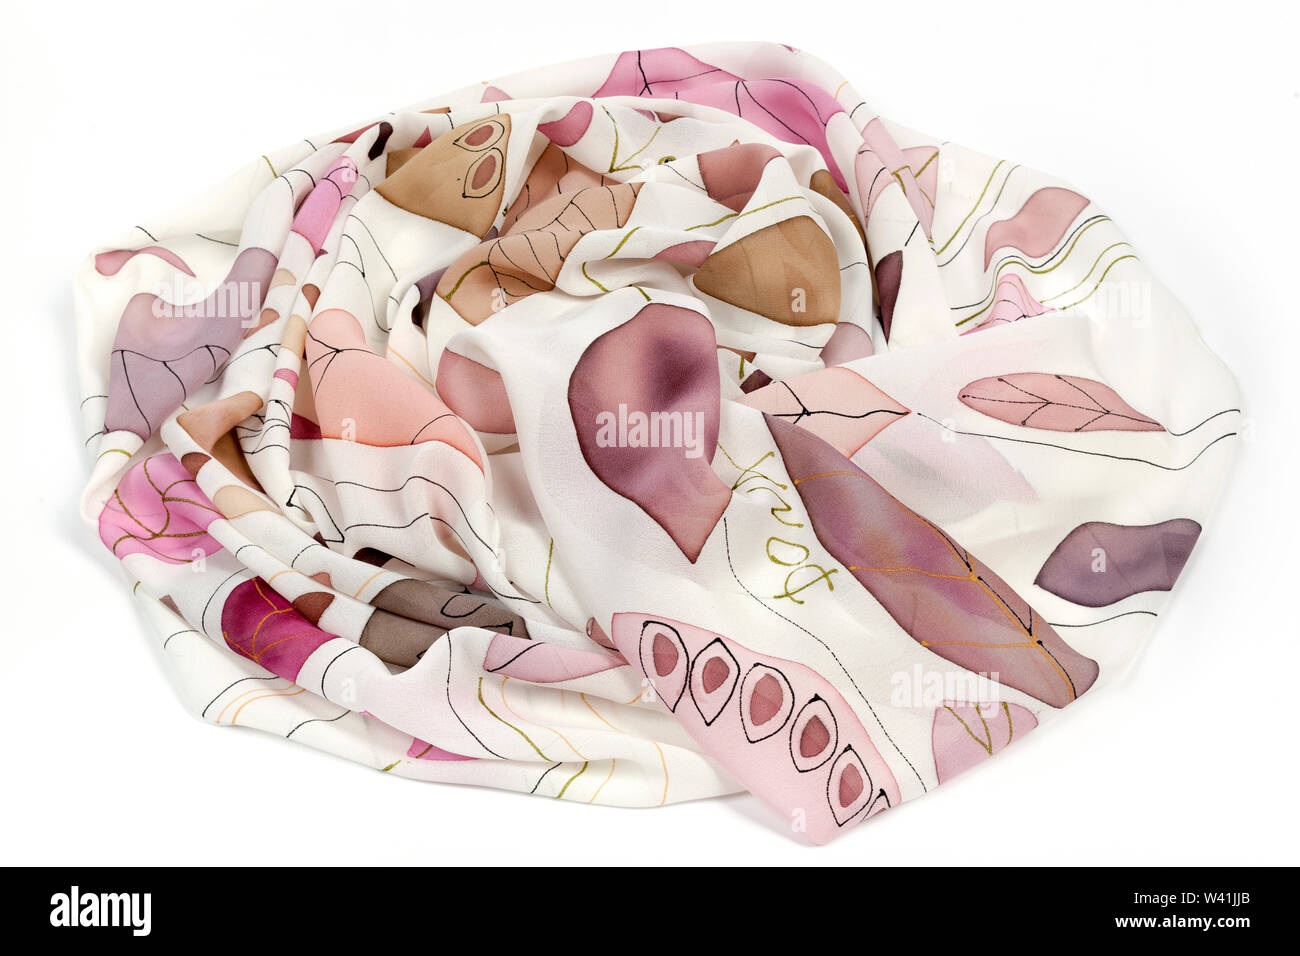 Dipinto a mano foulard di seta con colorati brids su sfondo bianco Foto Stock